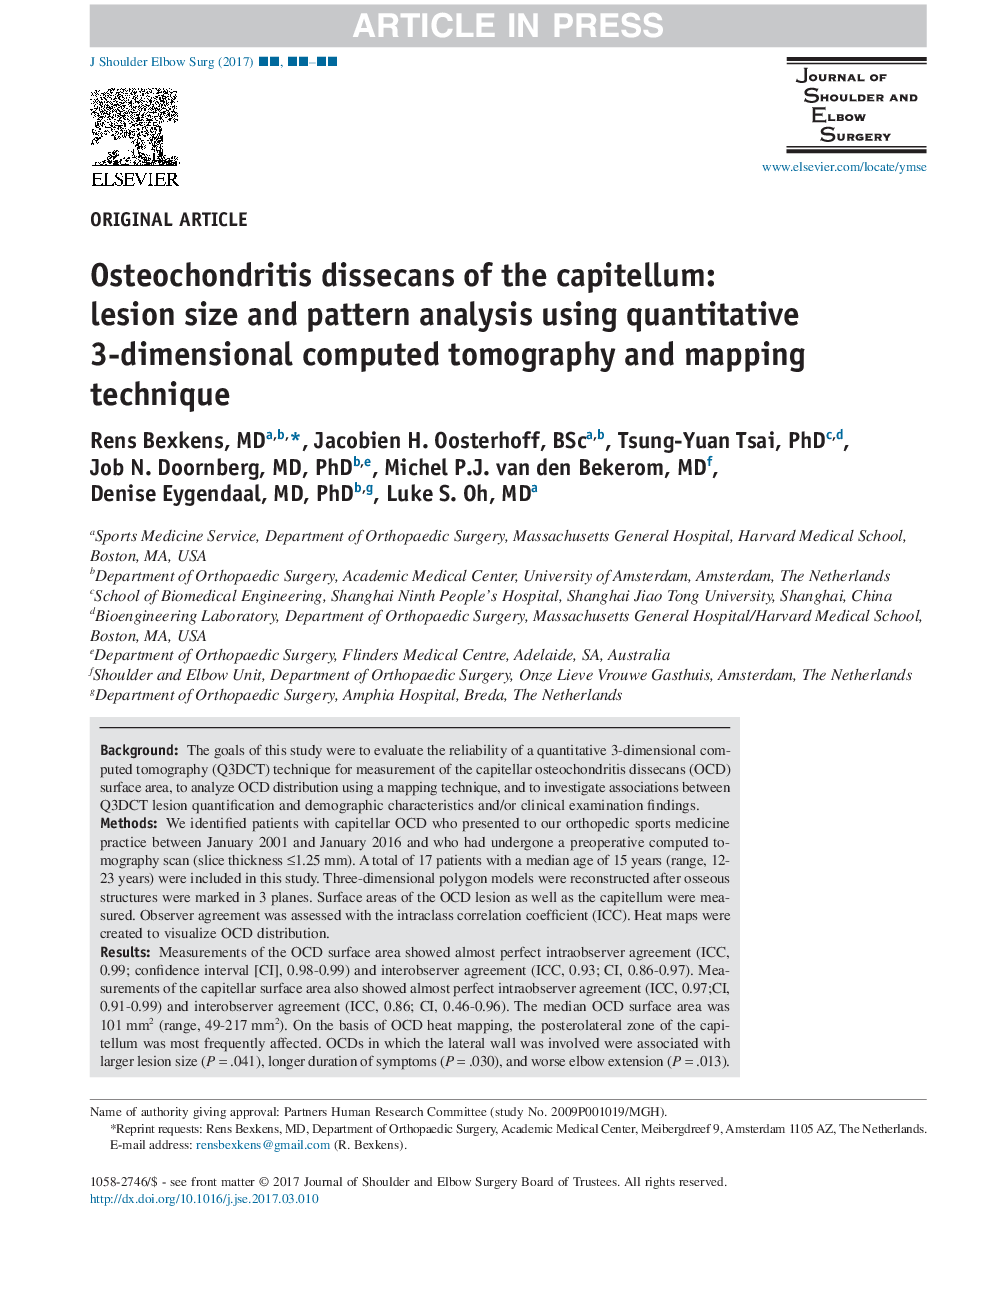 اختلالات استئوخونریت سرطان: اندازه ضایعه و تجزیه و تحلیل الگوی با استفاده از تکنیک سه بعدی کامپوزیتی و نقشه برداری 